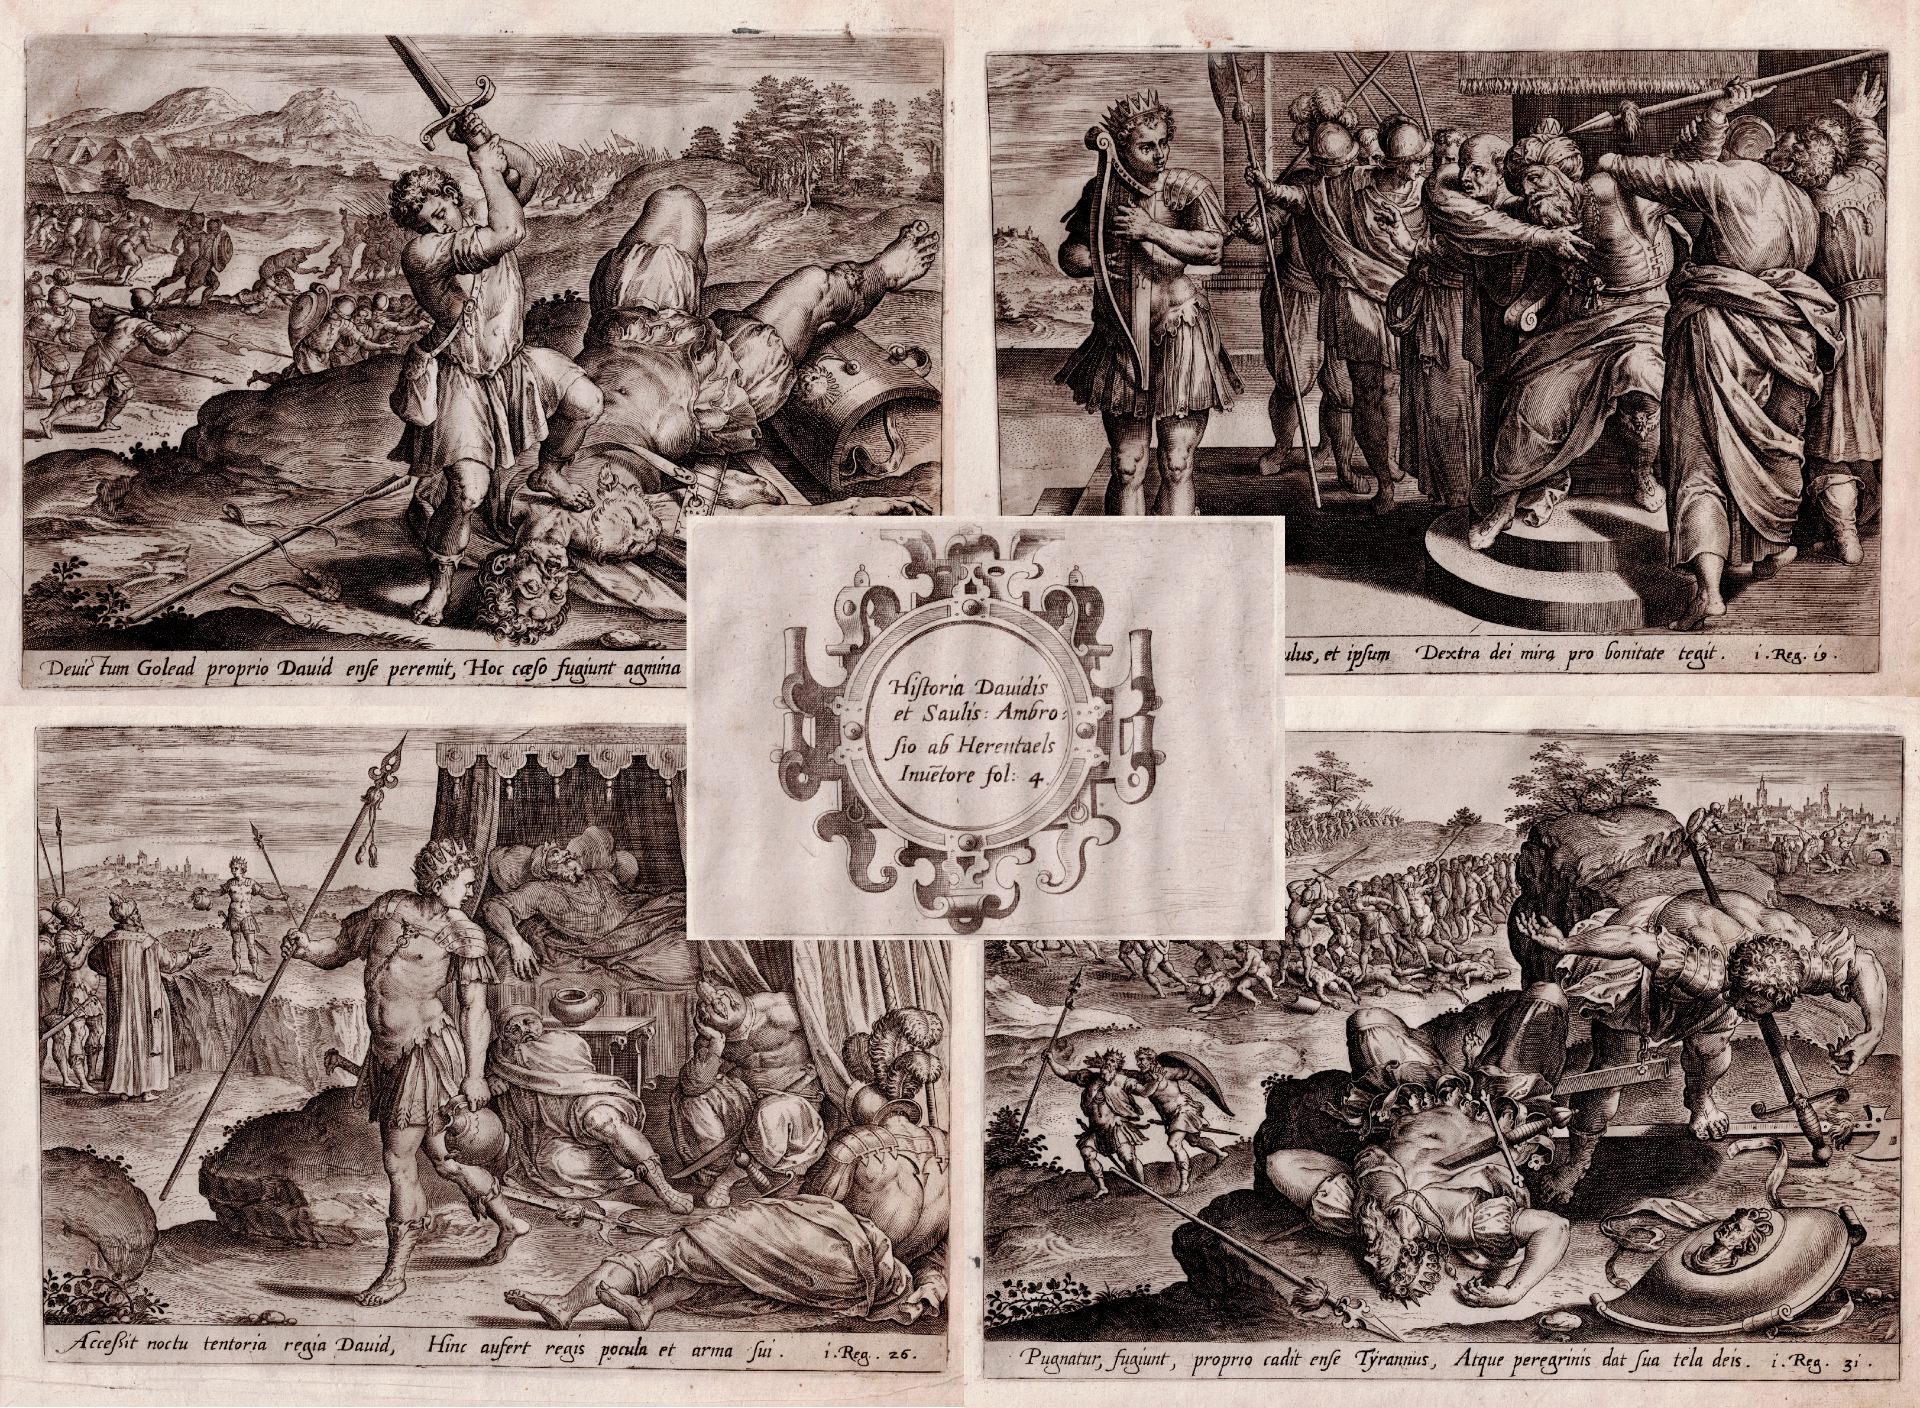 Ambrosius Francken (1544-1618), Hans Collaert (1525-1580)